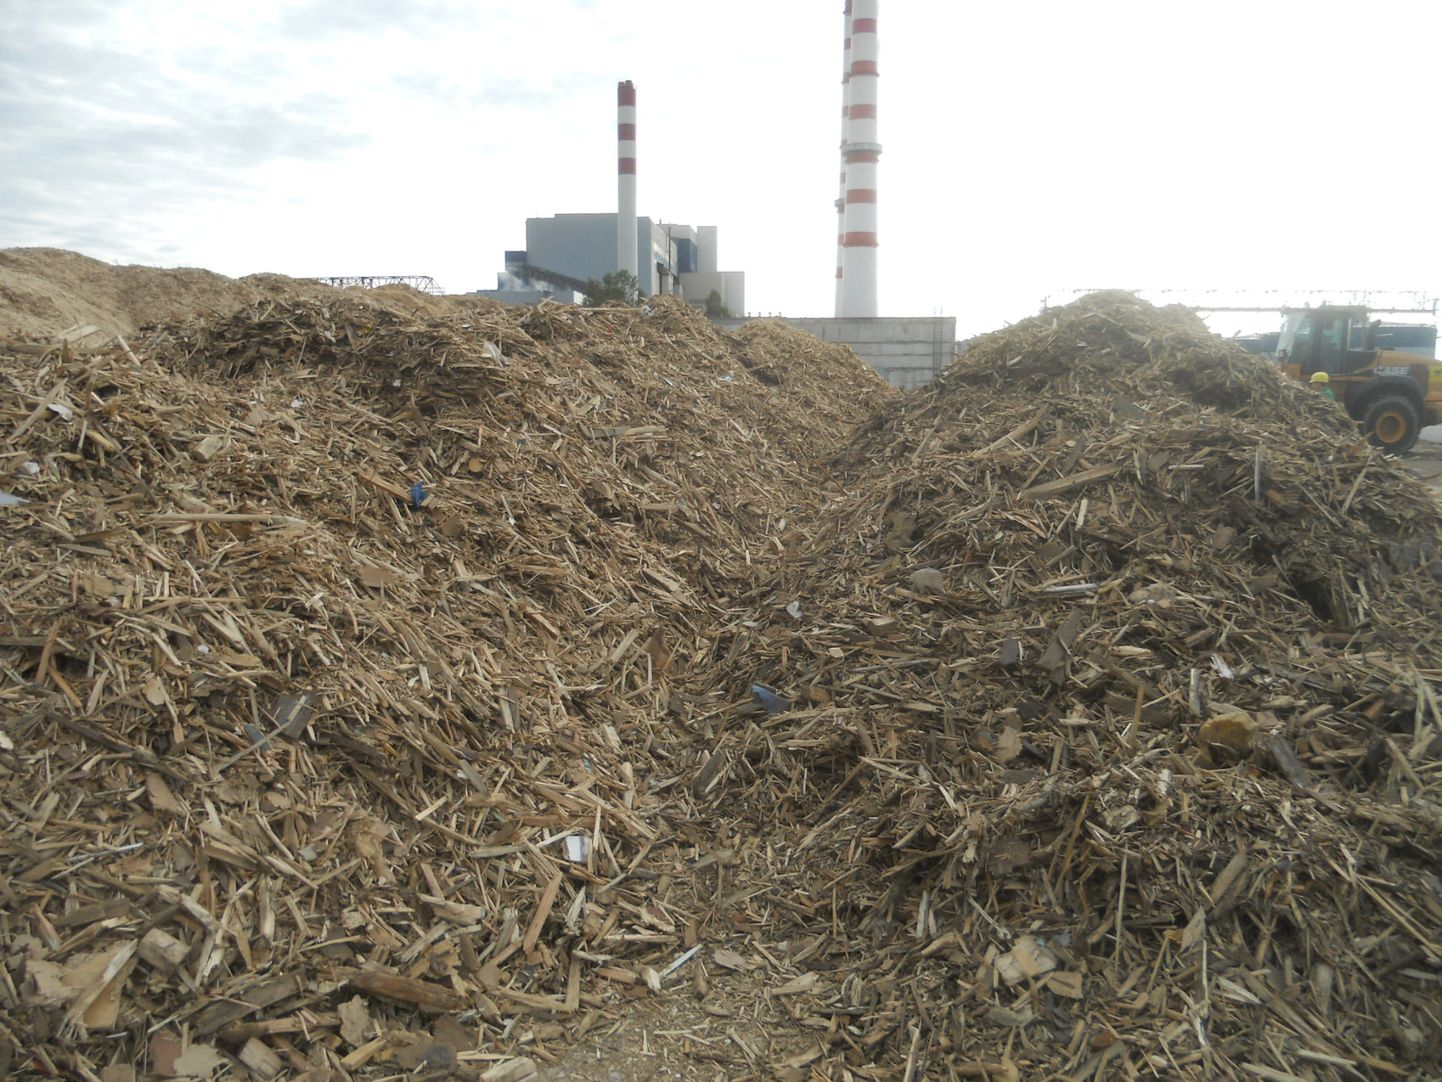 Древесные отходы, складированные рядом с Балтийской электростанцией "Eesti Energia" в Нарве.